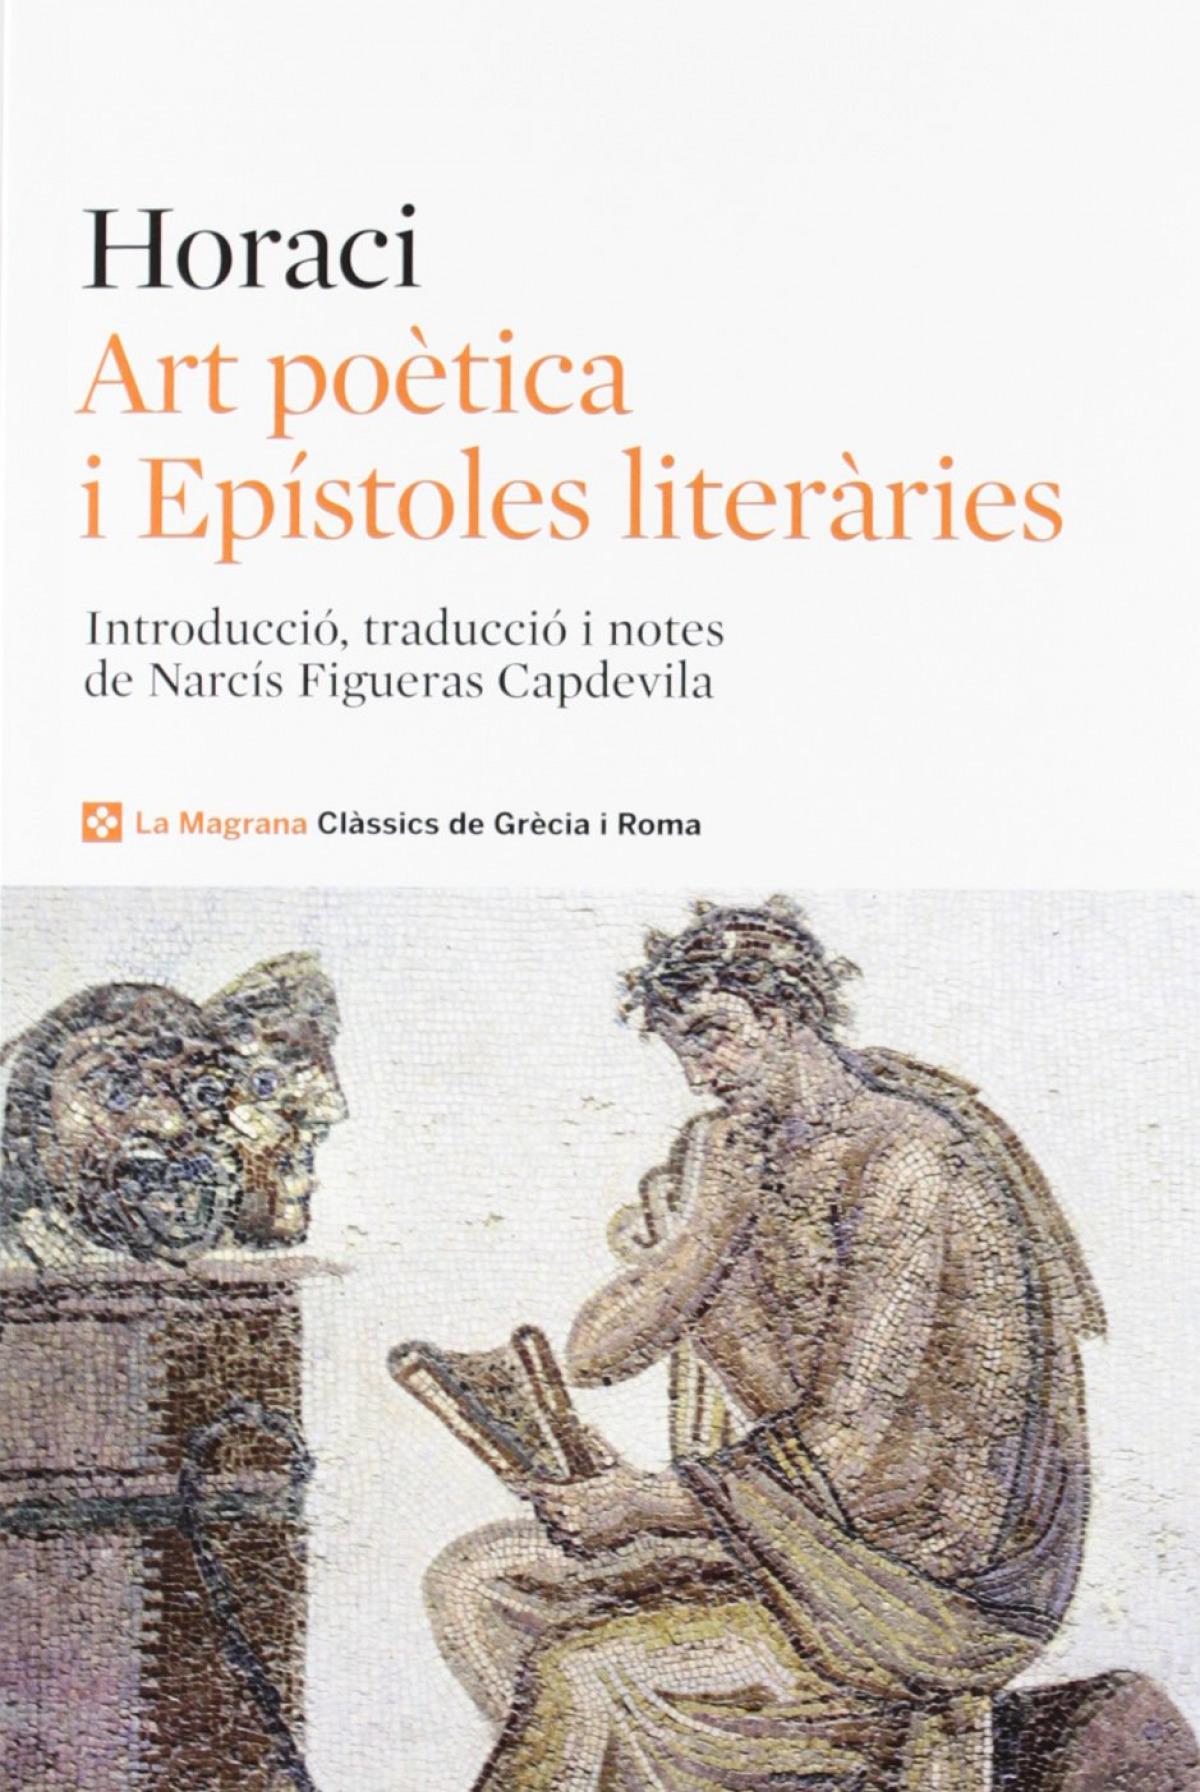 Art poètica - Horaci / Figueras, Narcis (traduccio)